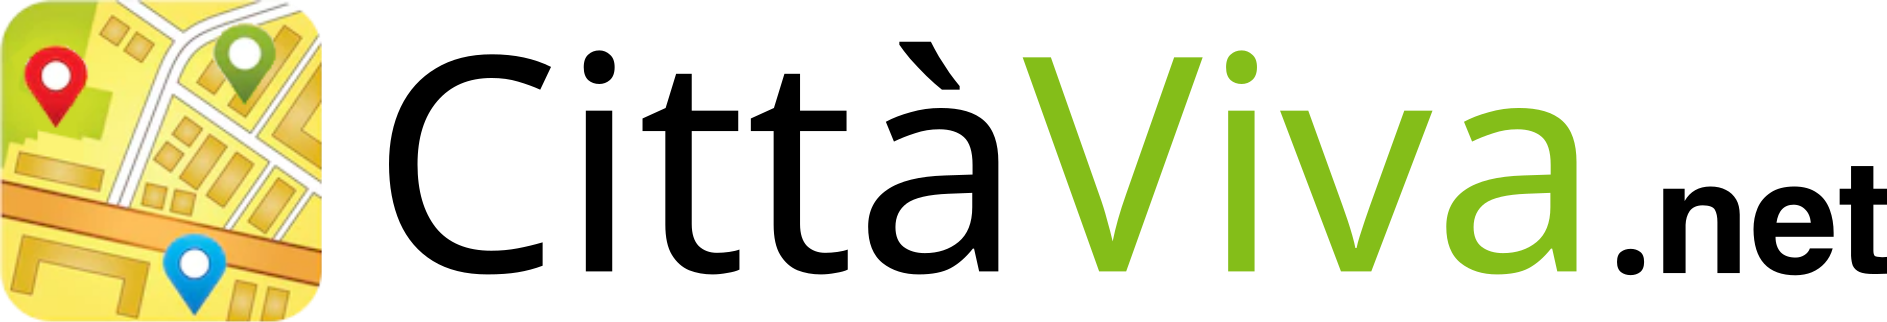 CittaViva.net Logo